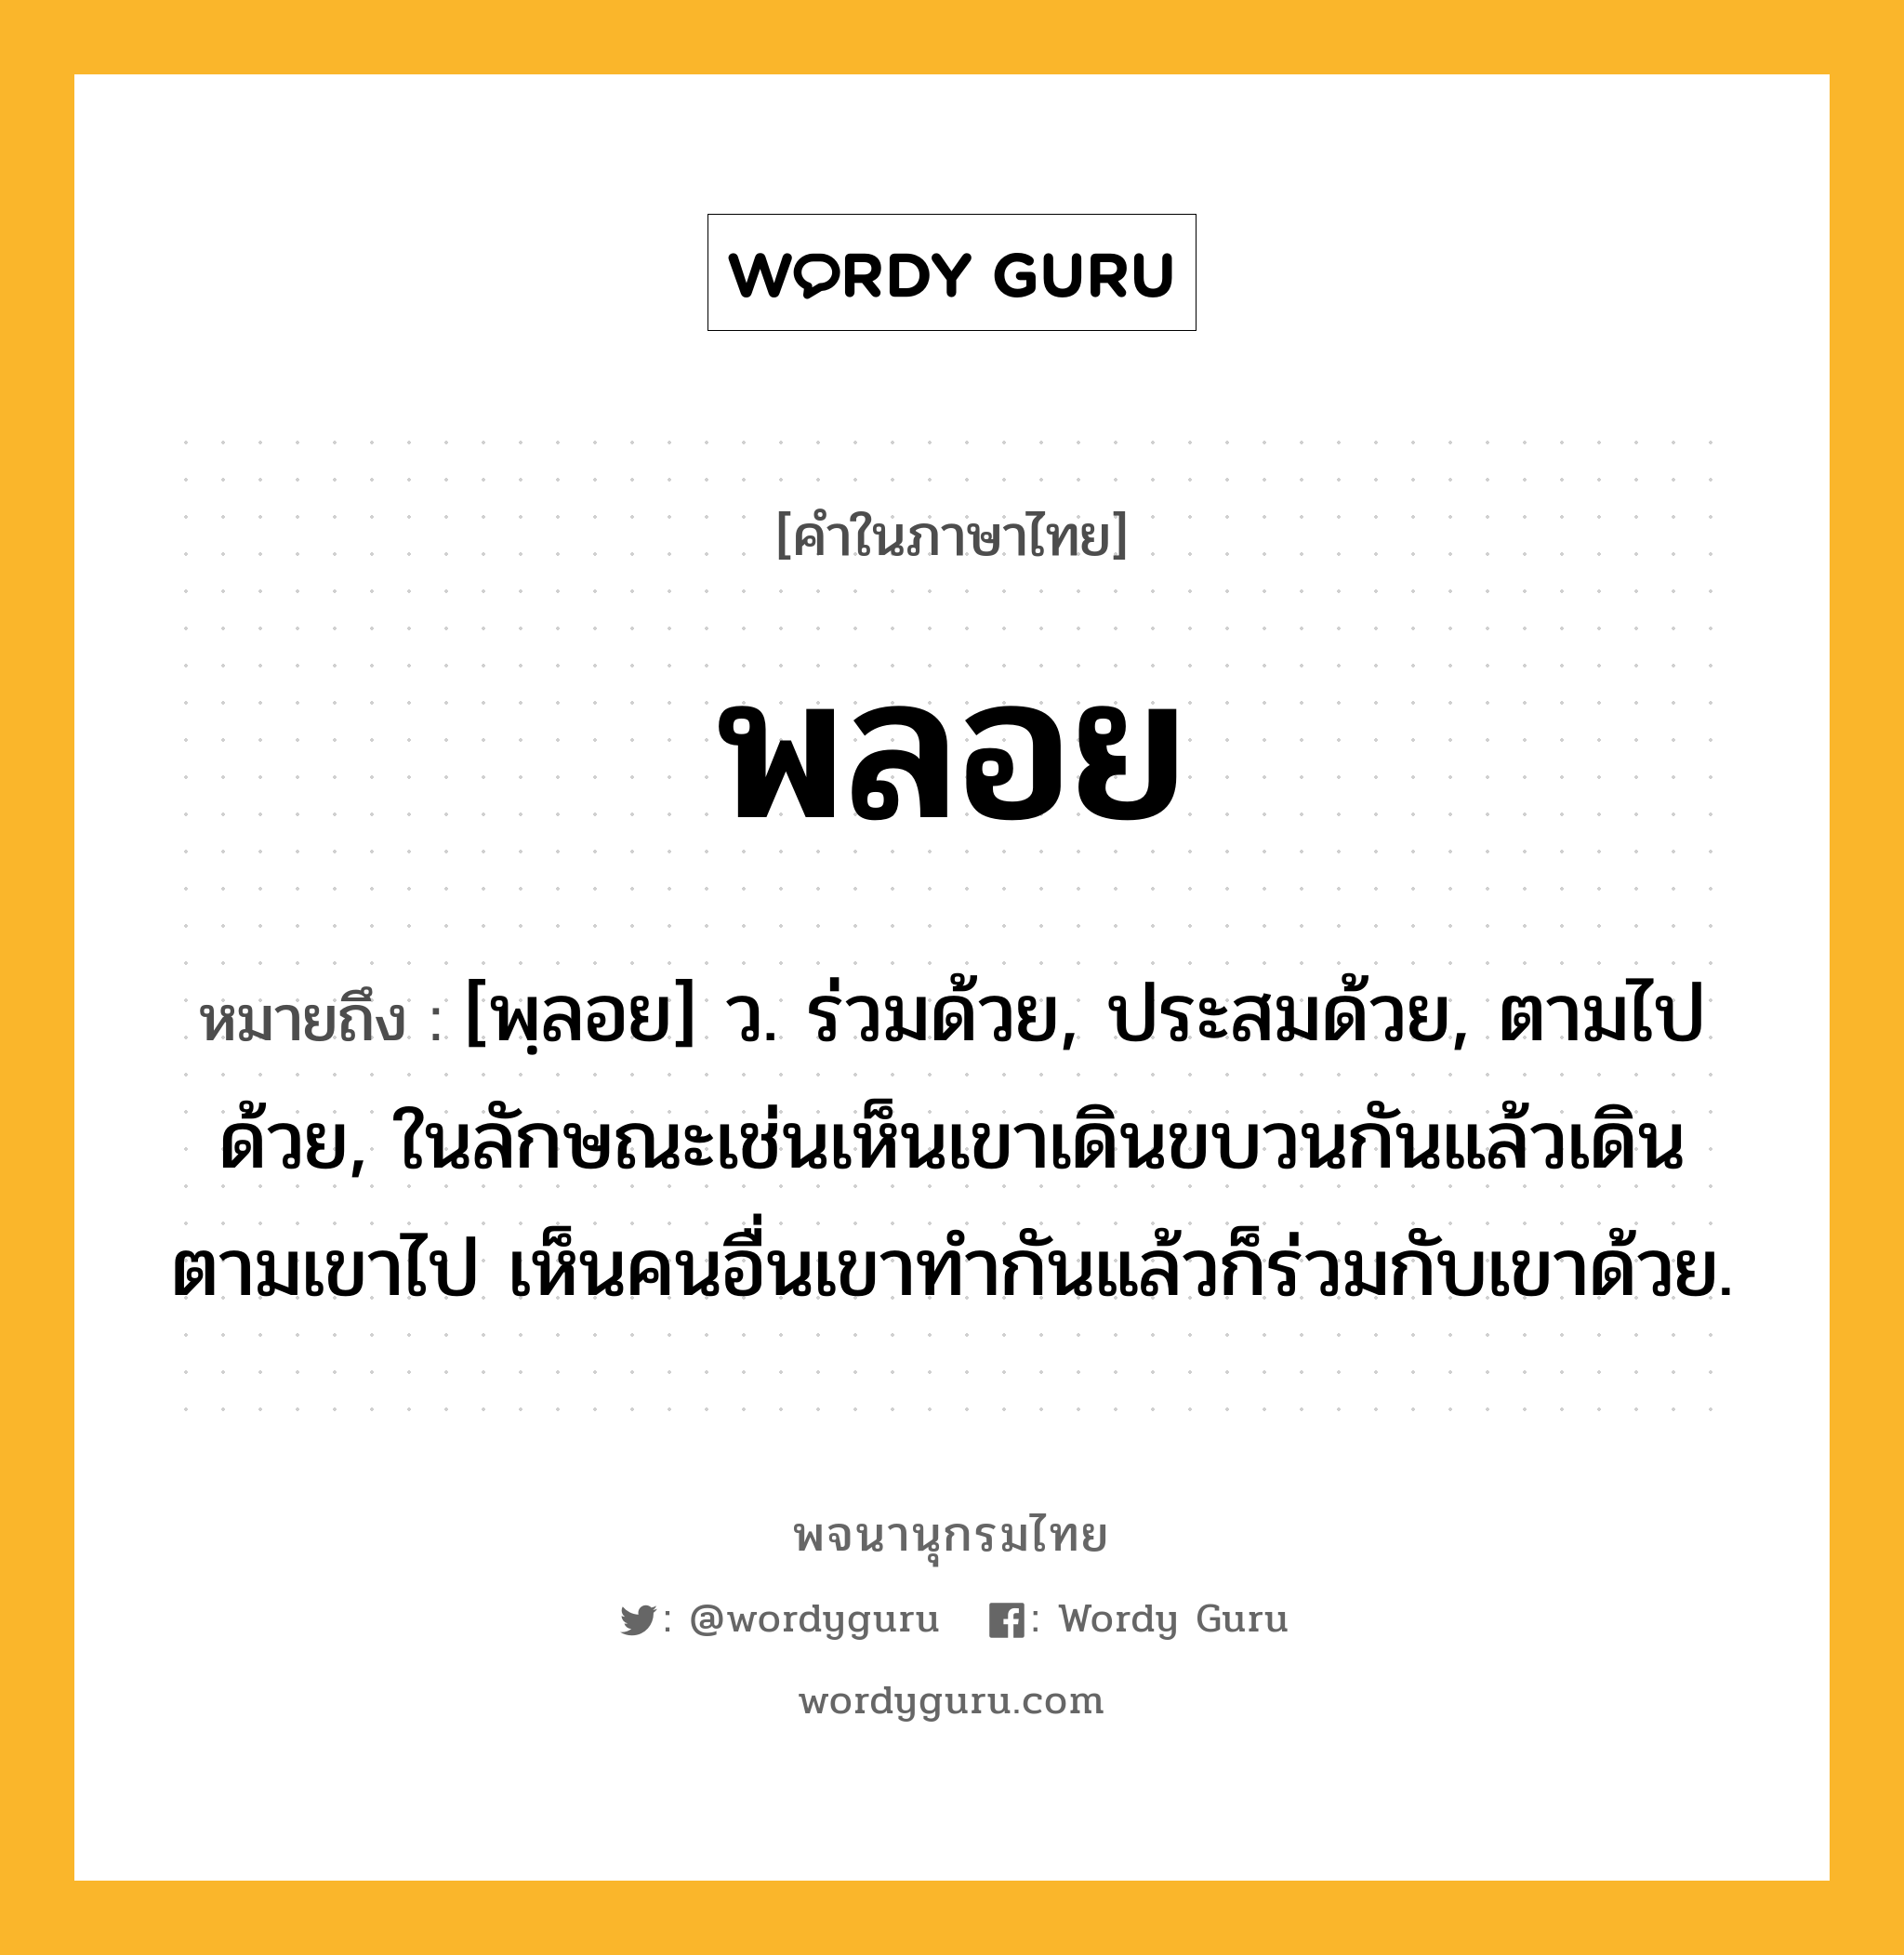 พลอย ความหมาย หมายถึงอะไร?, คำในภาษาไทย พลอย หมายถึง [พฺลอย] ว. ร่วมด้วย, ประสมด้วย, ตามไปด้วย, ในลักษณะเช่นเห็นเขาเดินขบวนกันแล้วเดินตามเขาไป เห็นคนอื่นเขาทํากันแล้วก็ร่วมกับเขาด้วย.